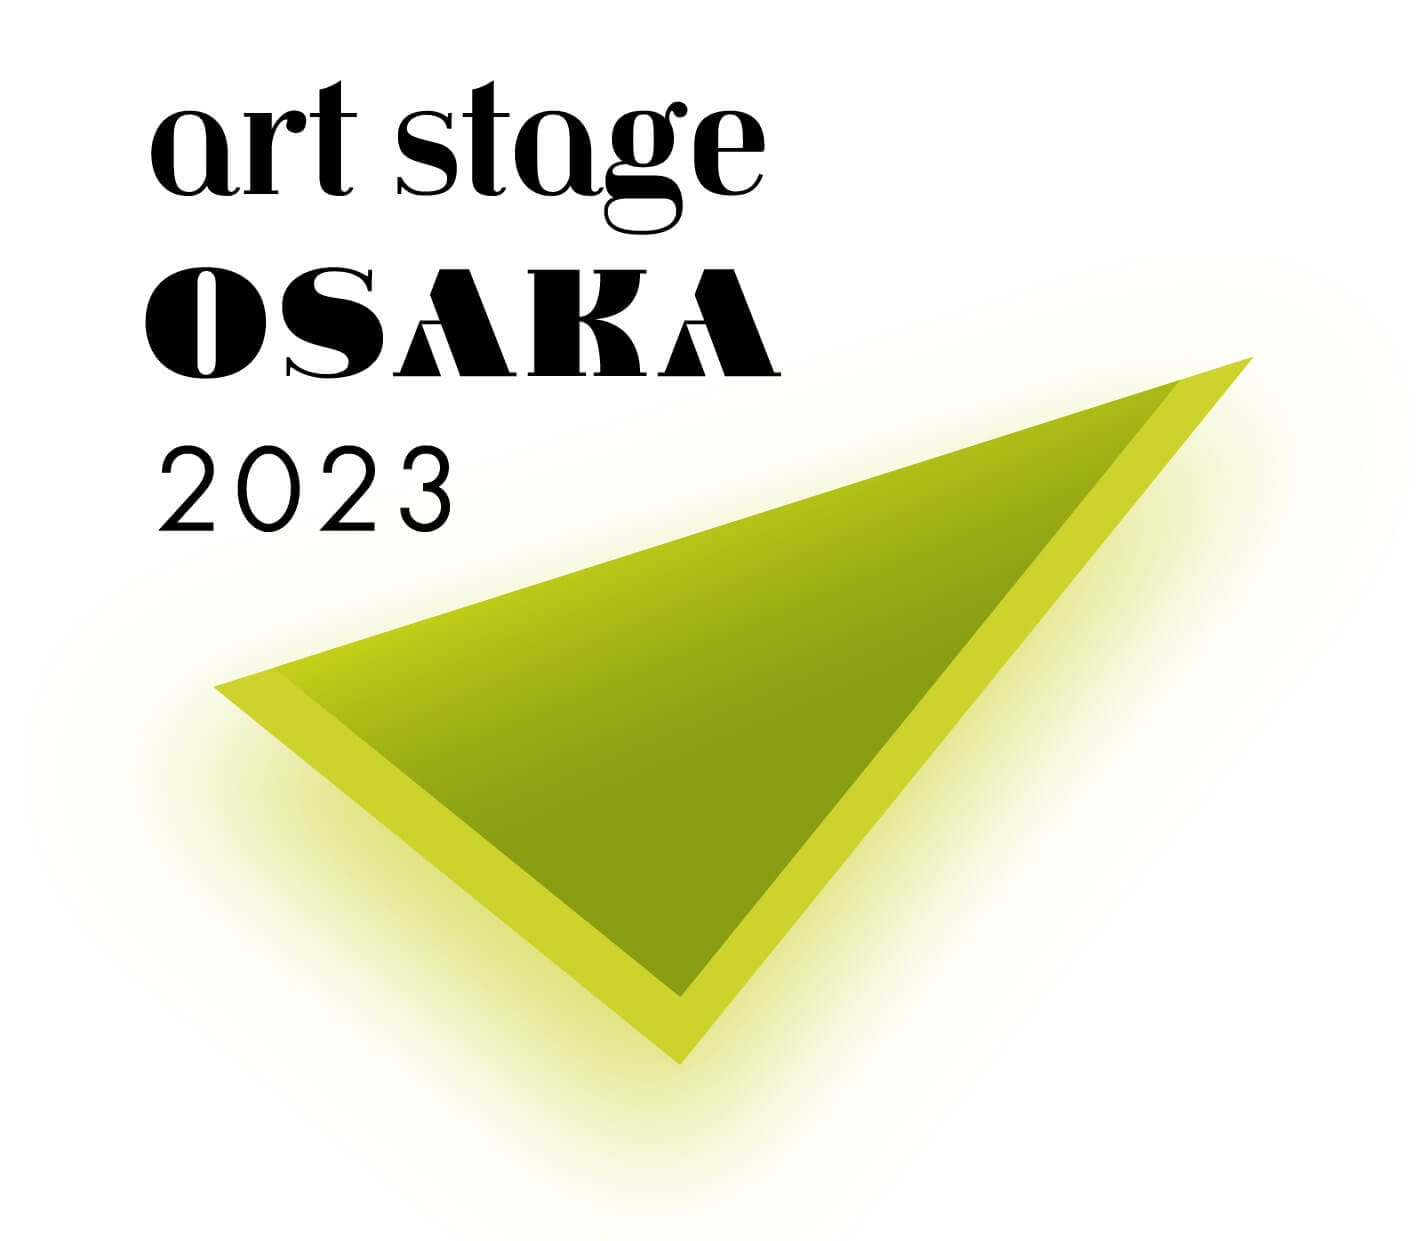 「アジア」「現代美術」「New Media」の3つの視点で展示を構成。「アートで見る未来社会」がテーマの「art stage OSAKA 2023」、グランキューブ大阪にて開催。